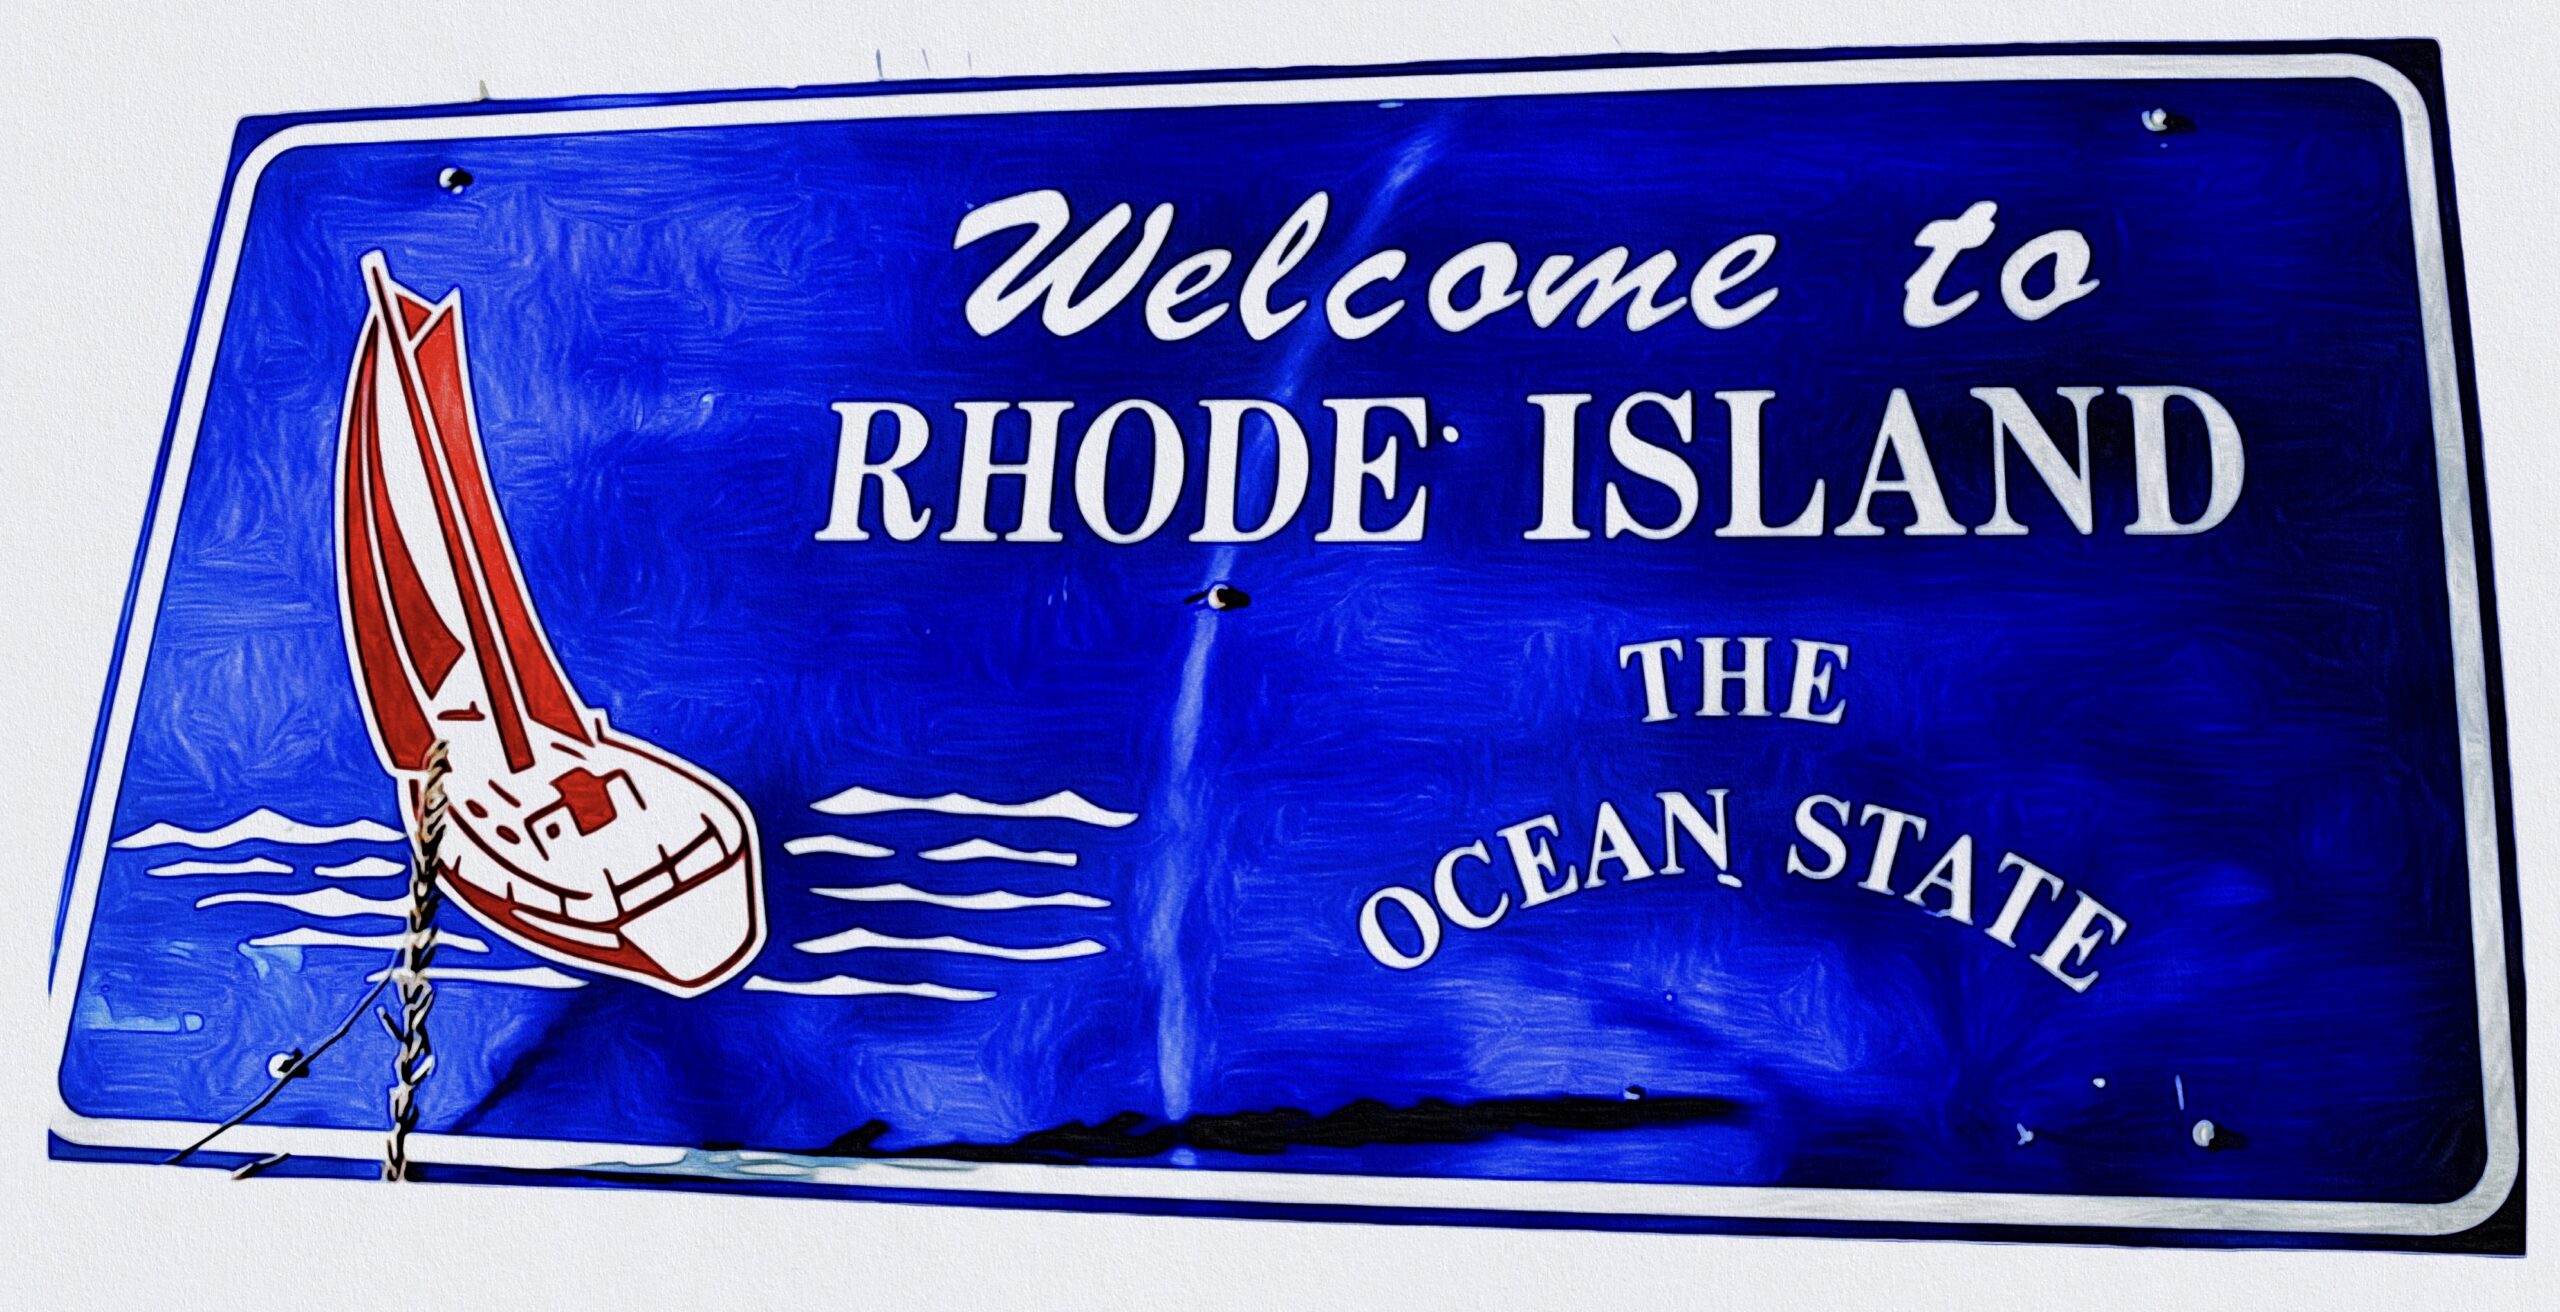 Visit Rhode Island